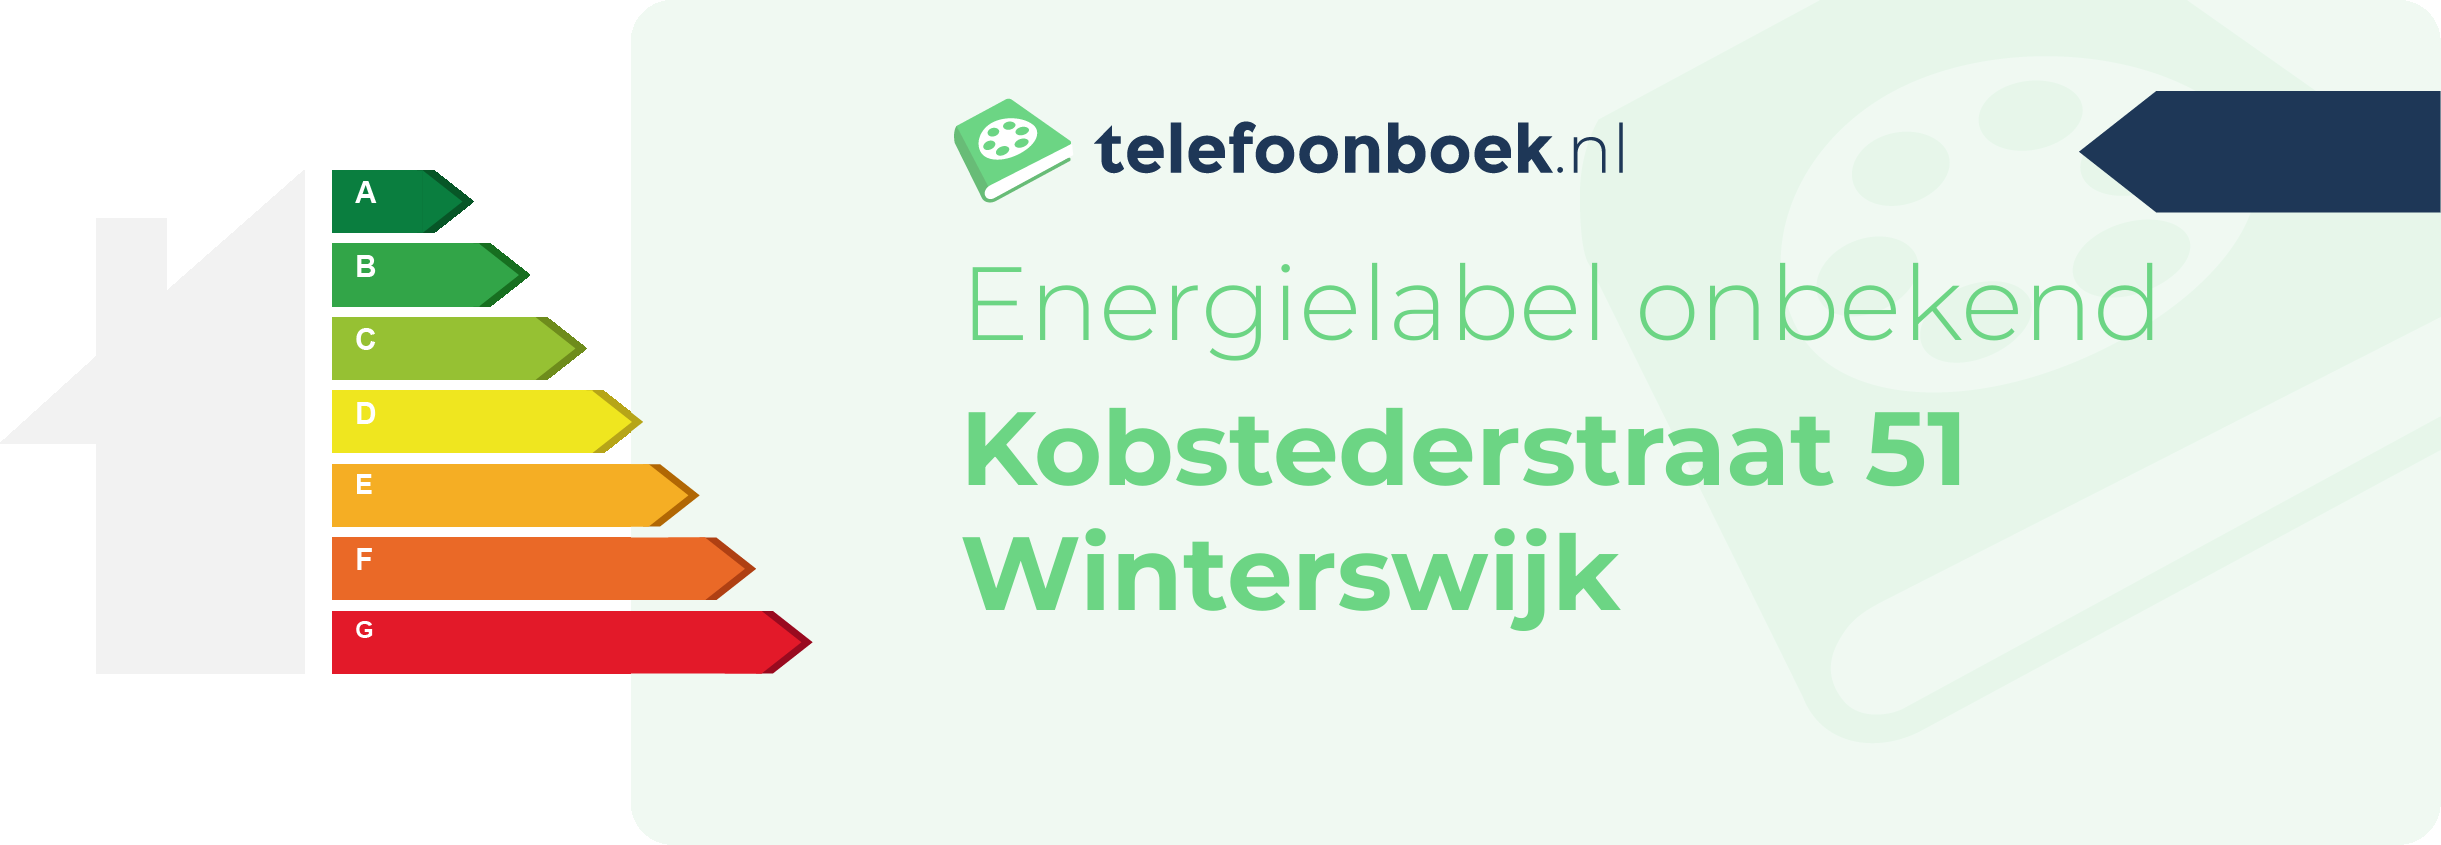 Energielabel Kobstederstraat 51 Winterswijk